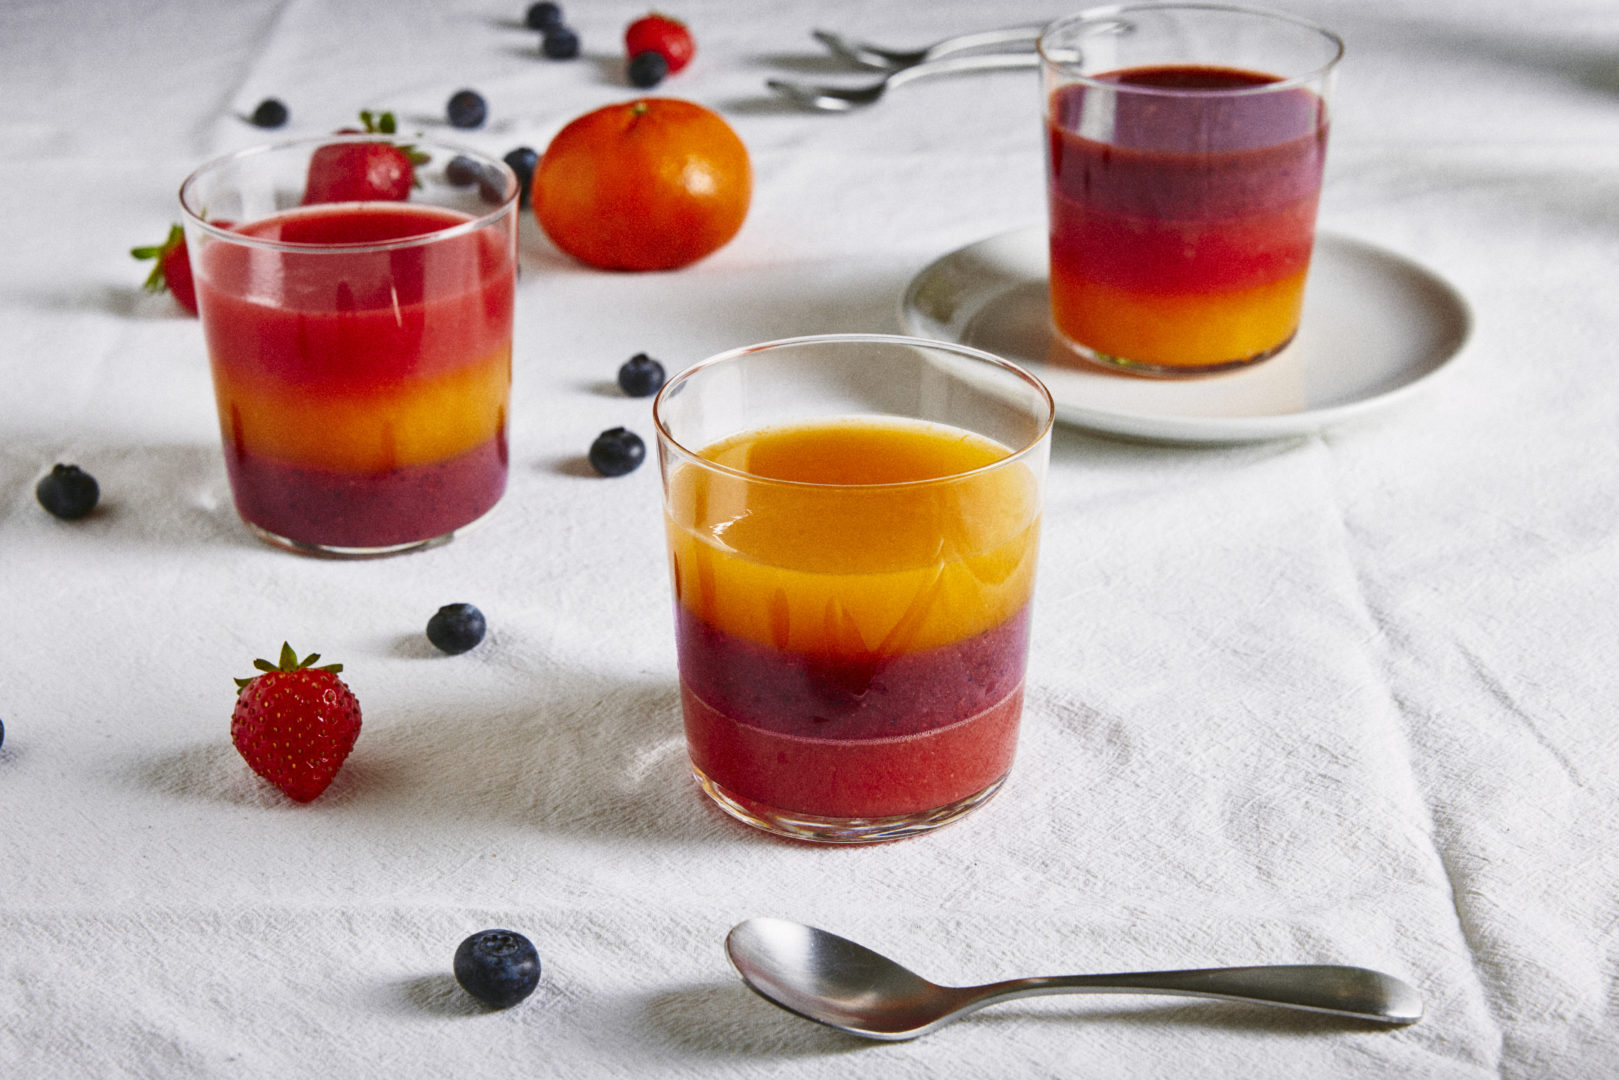 receita de gelatina de frutas: a sobremesa está em três copos disposto na mesa. A gelatina tem três cores: vermelho, laranja e roxa.